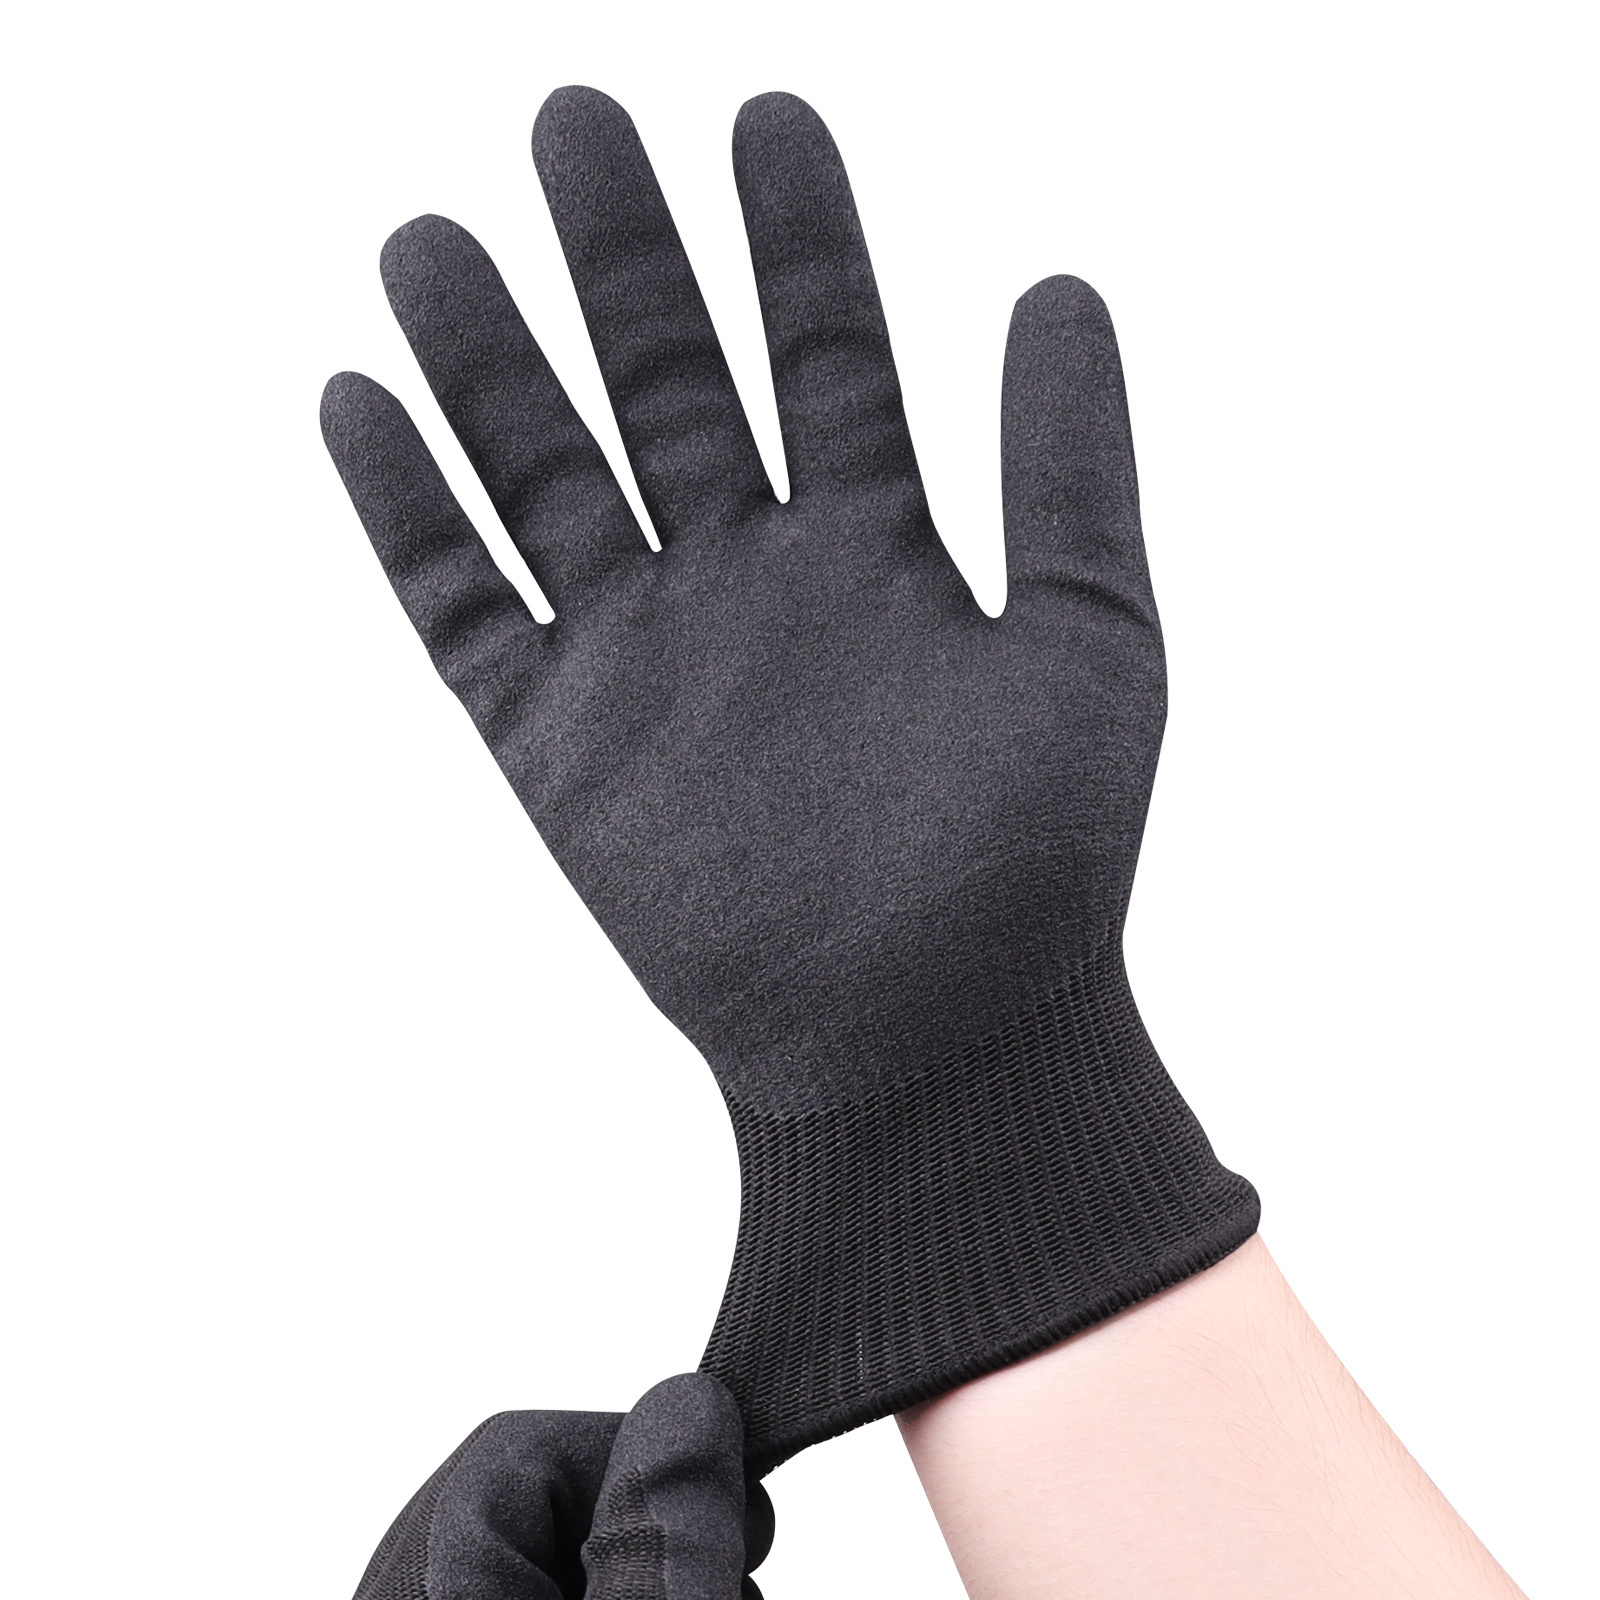 Fiber for gloves